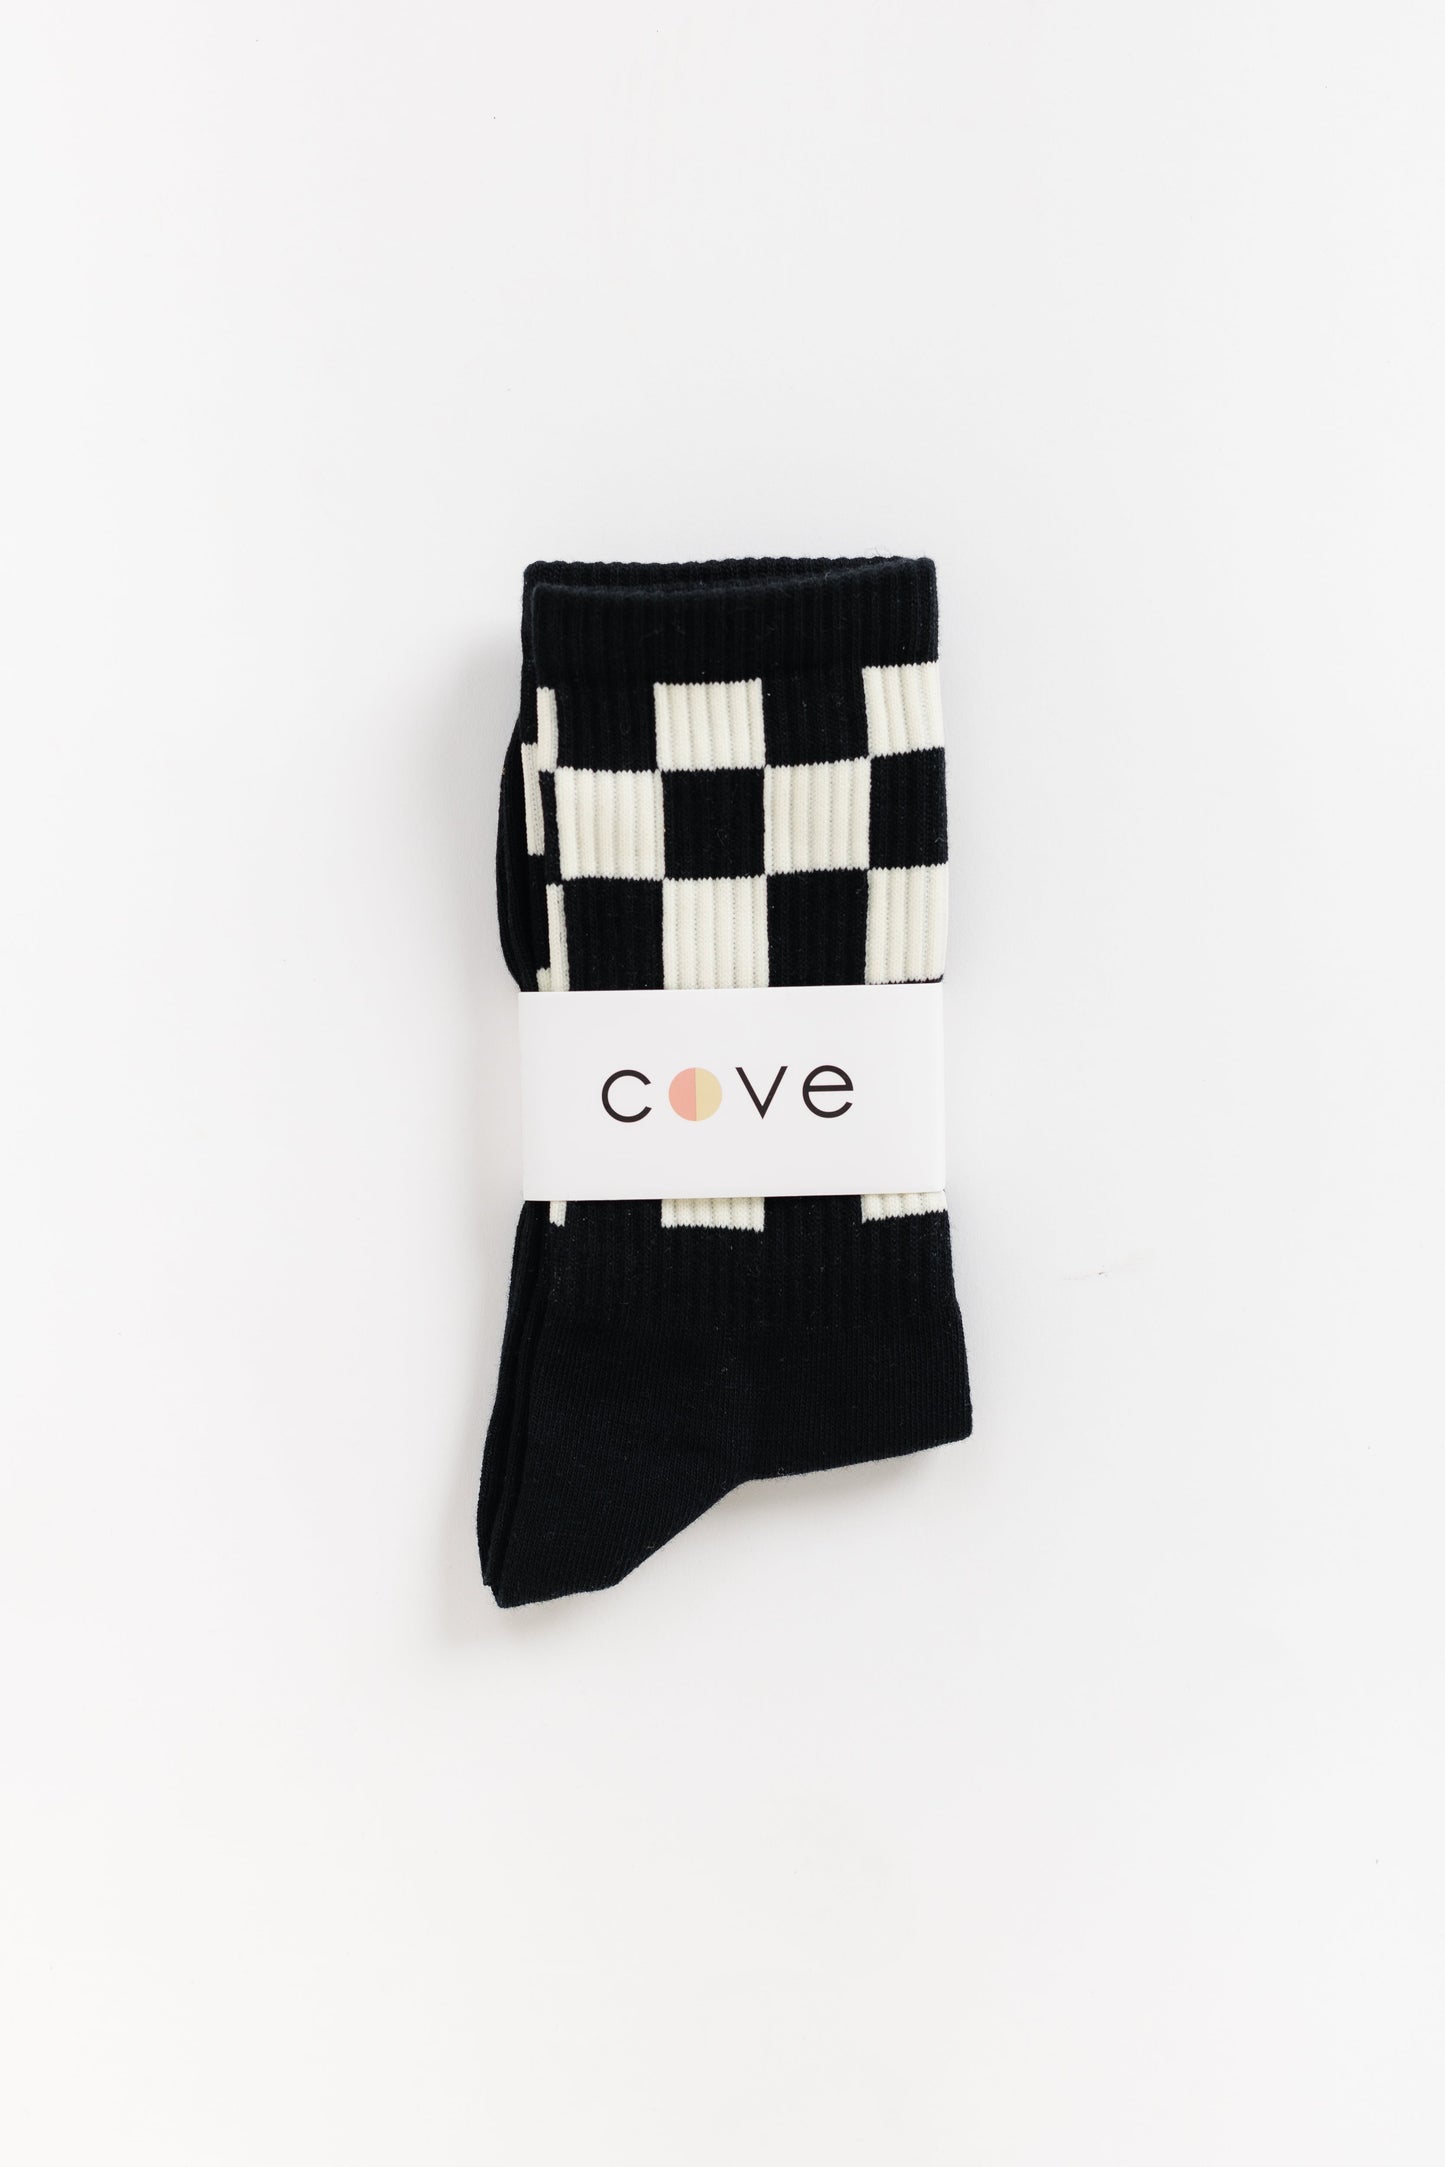 Checker Retro Socks WOMEN'S SOCKS Cove Accessories Blk/Wht OS 